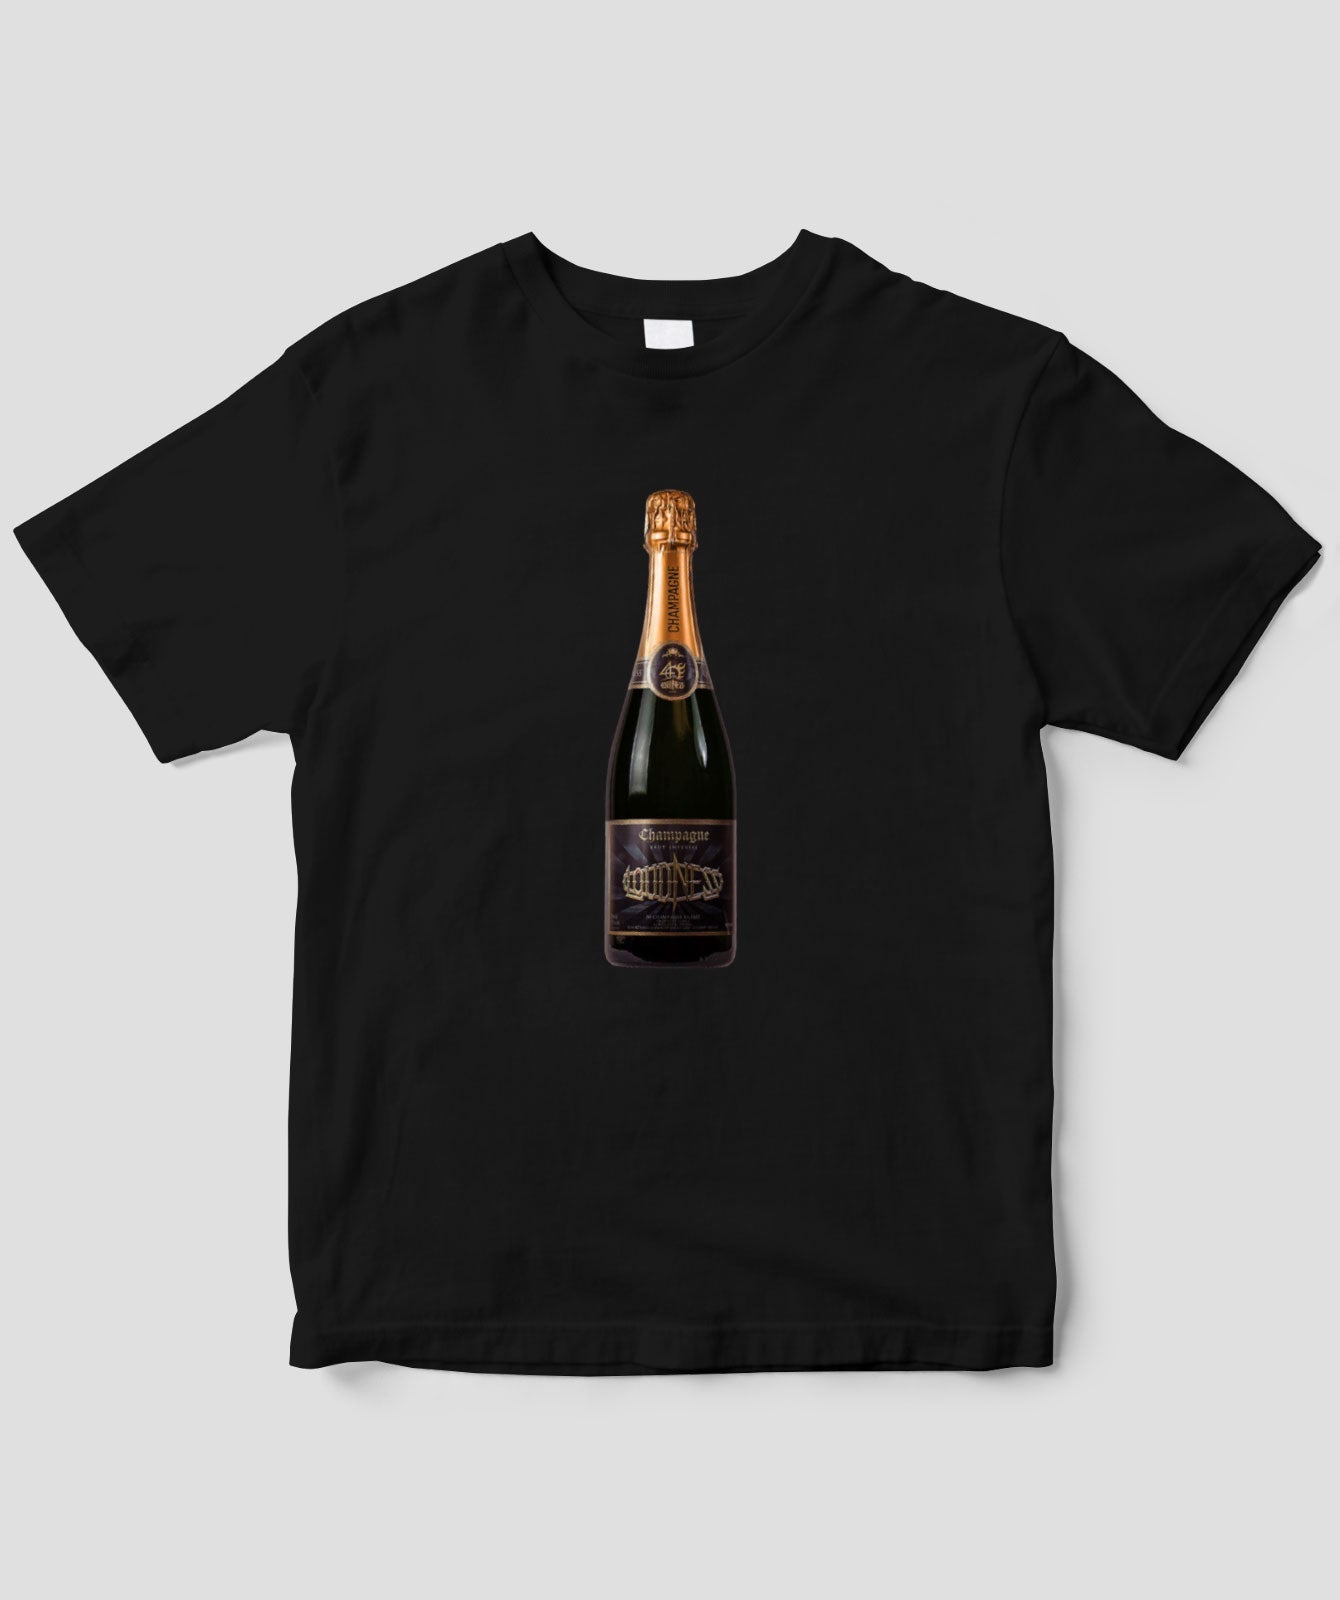 ラウドネス公式シャンパン・スペシャルTシャツ Type B